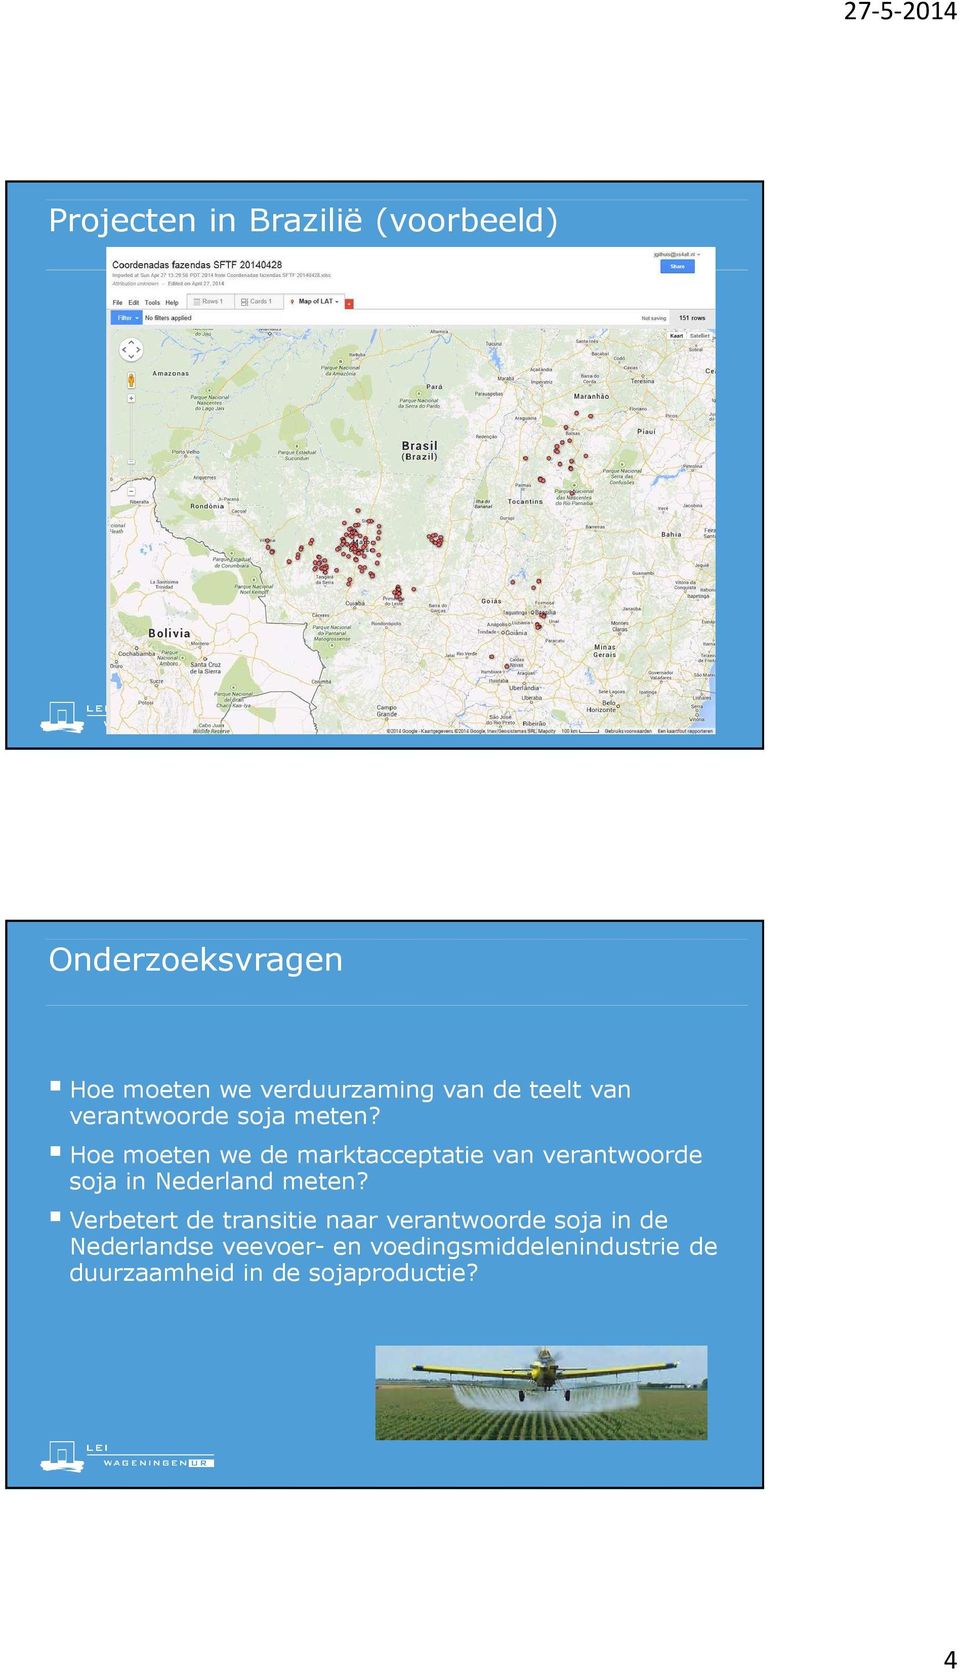 Hoe moeten we de marktacceptatie van verantwoorde soja in Nederland meten?